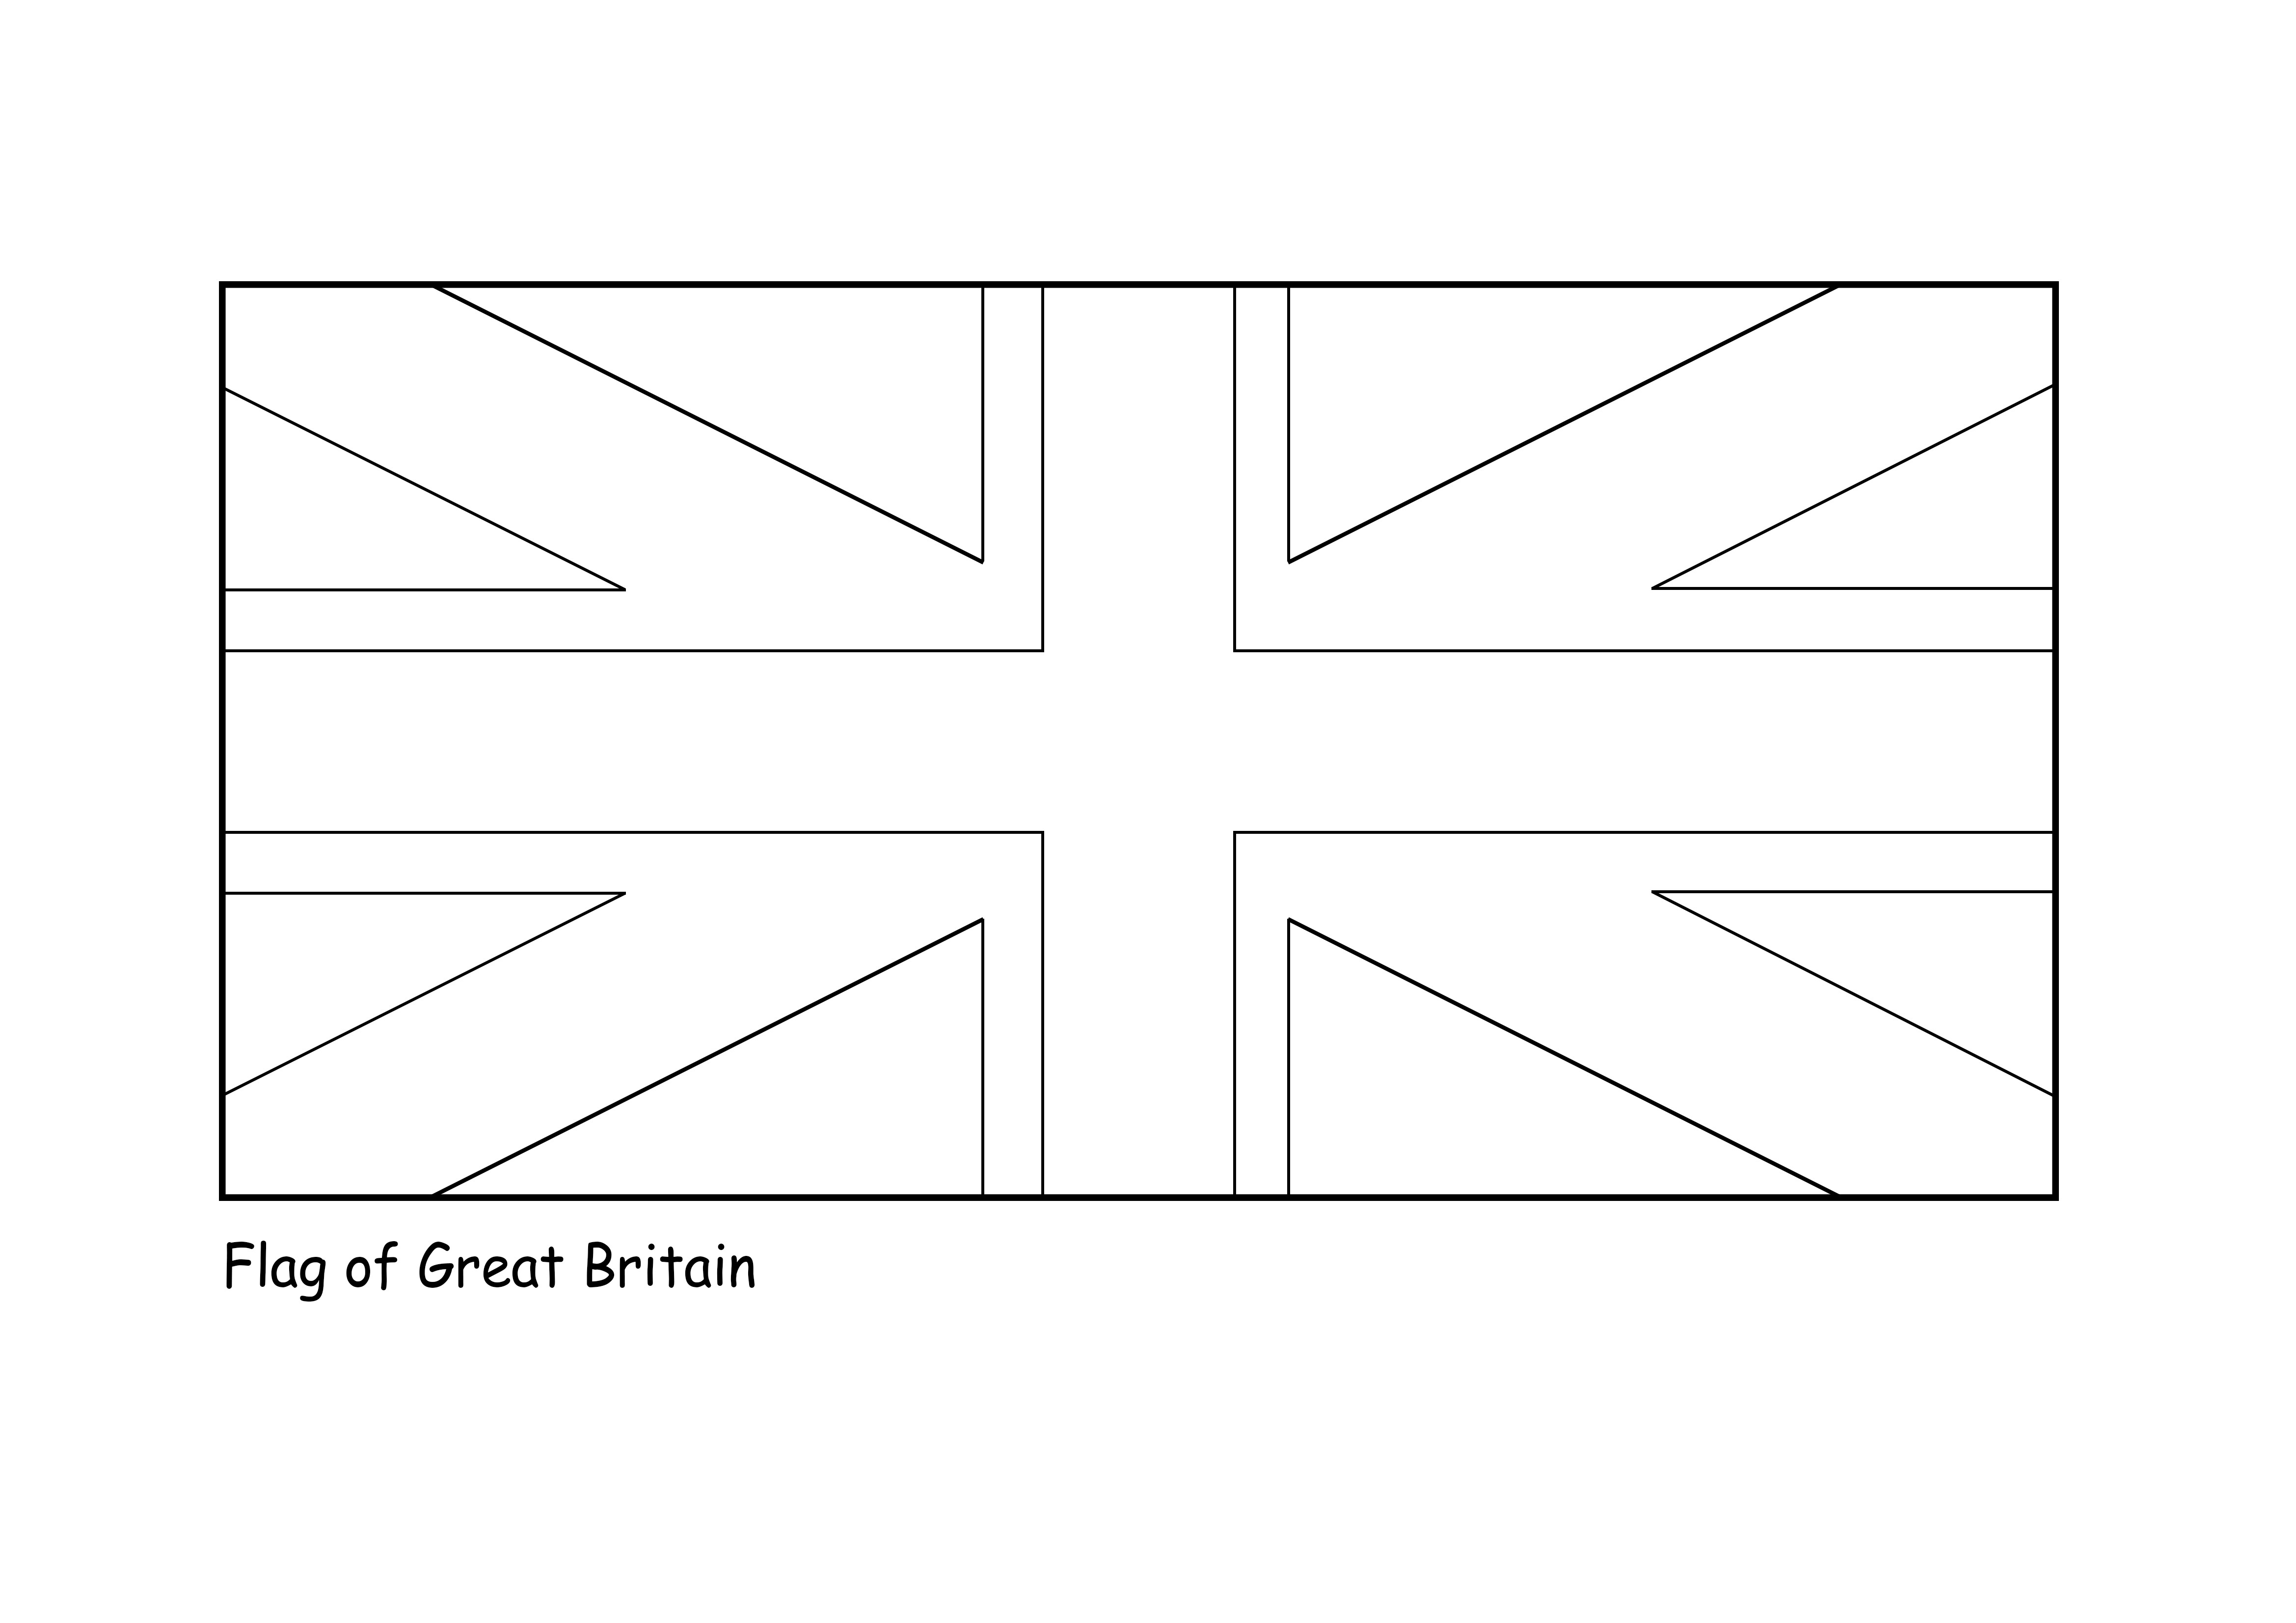 Flaga Wielkiej Brytanii do wydrukowania i pokolorowania obrazu za darmo